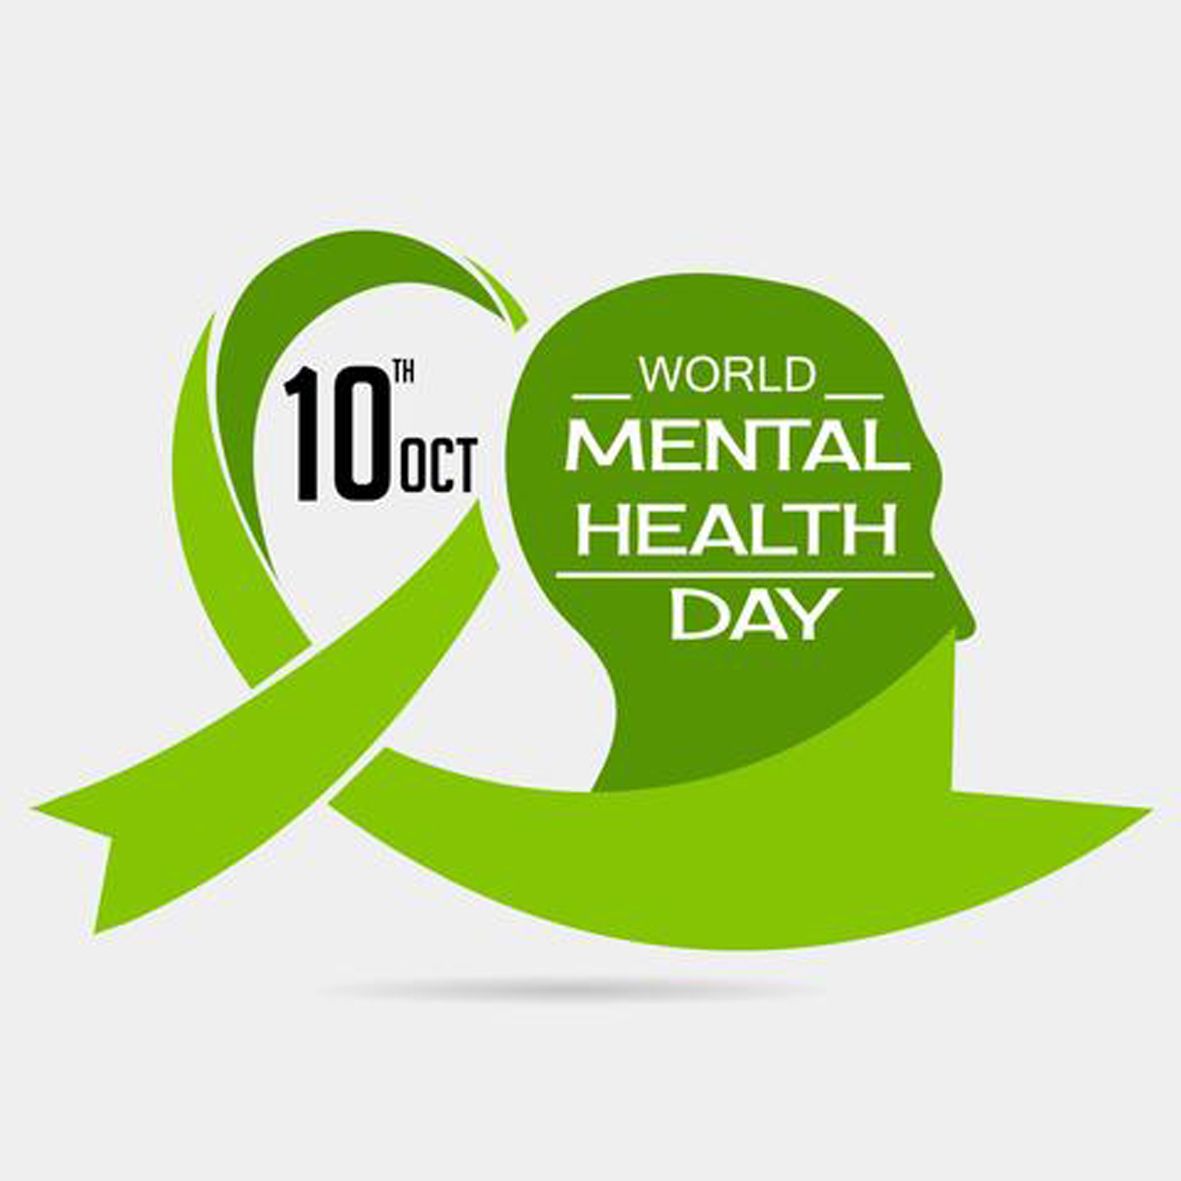 Светски дан  менталног здравља